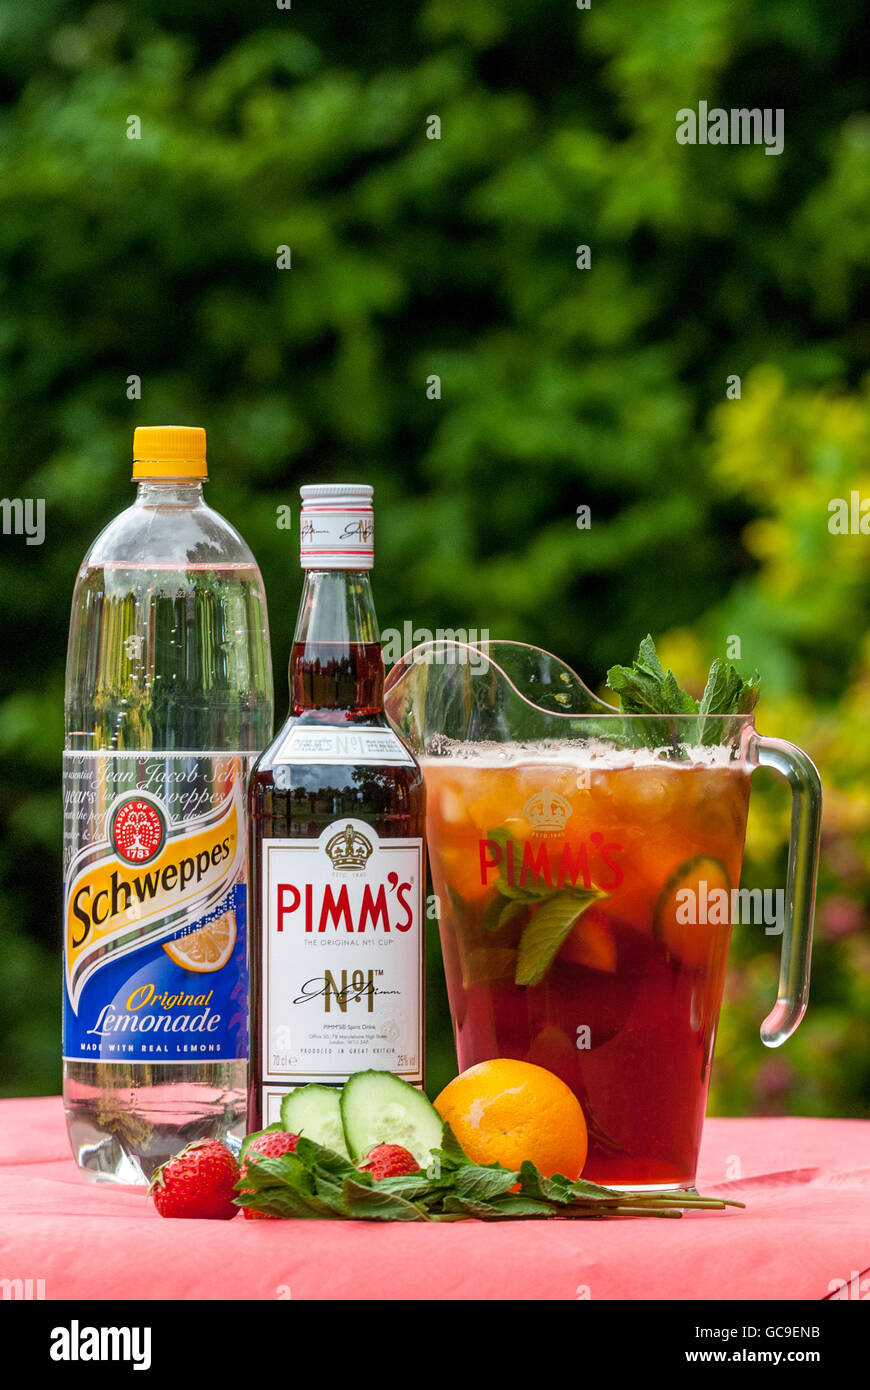 https://c8.alamy.com/compes/gc9enb/la-clasica-bebida-pimms-y-una-seleccion-de-mezcladores-de-verano-gc9enb.jpg